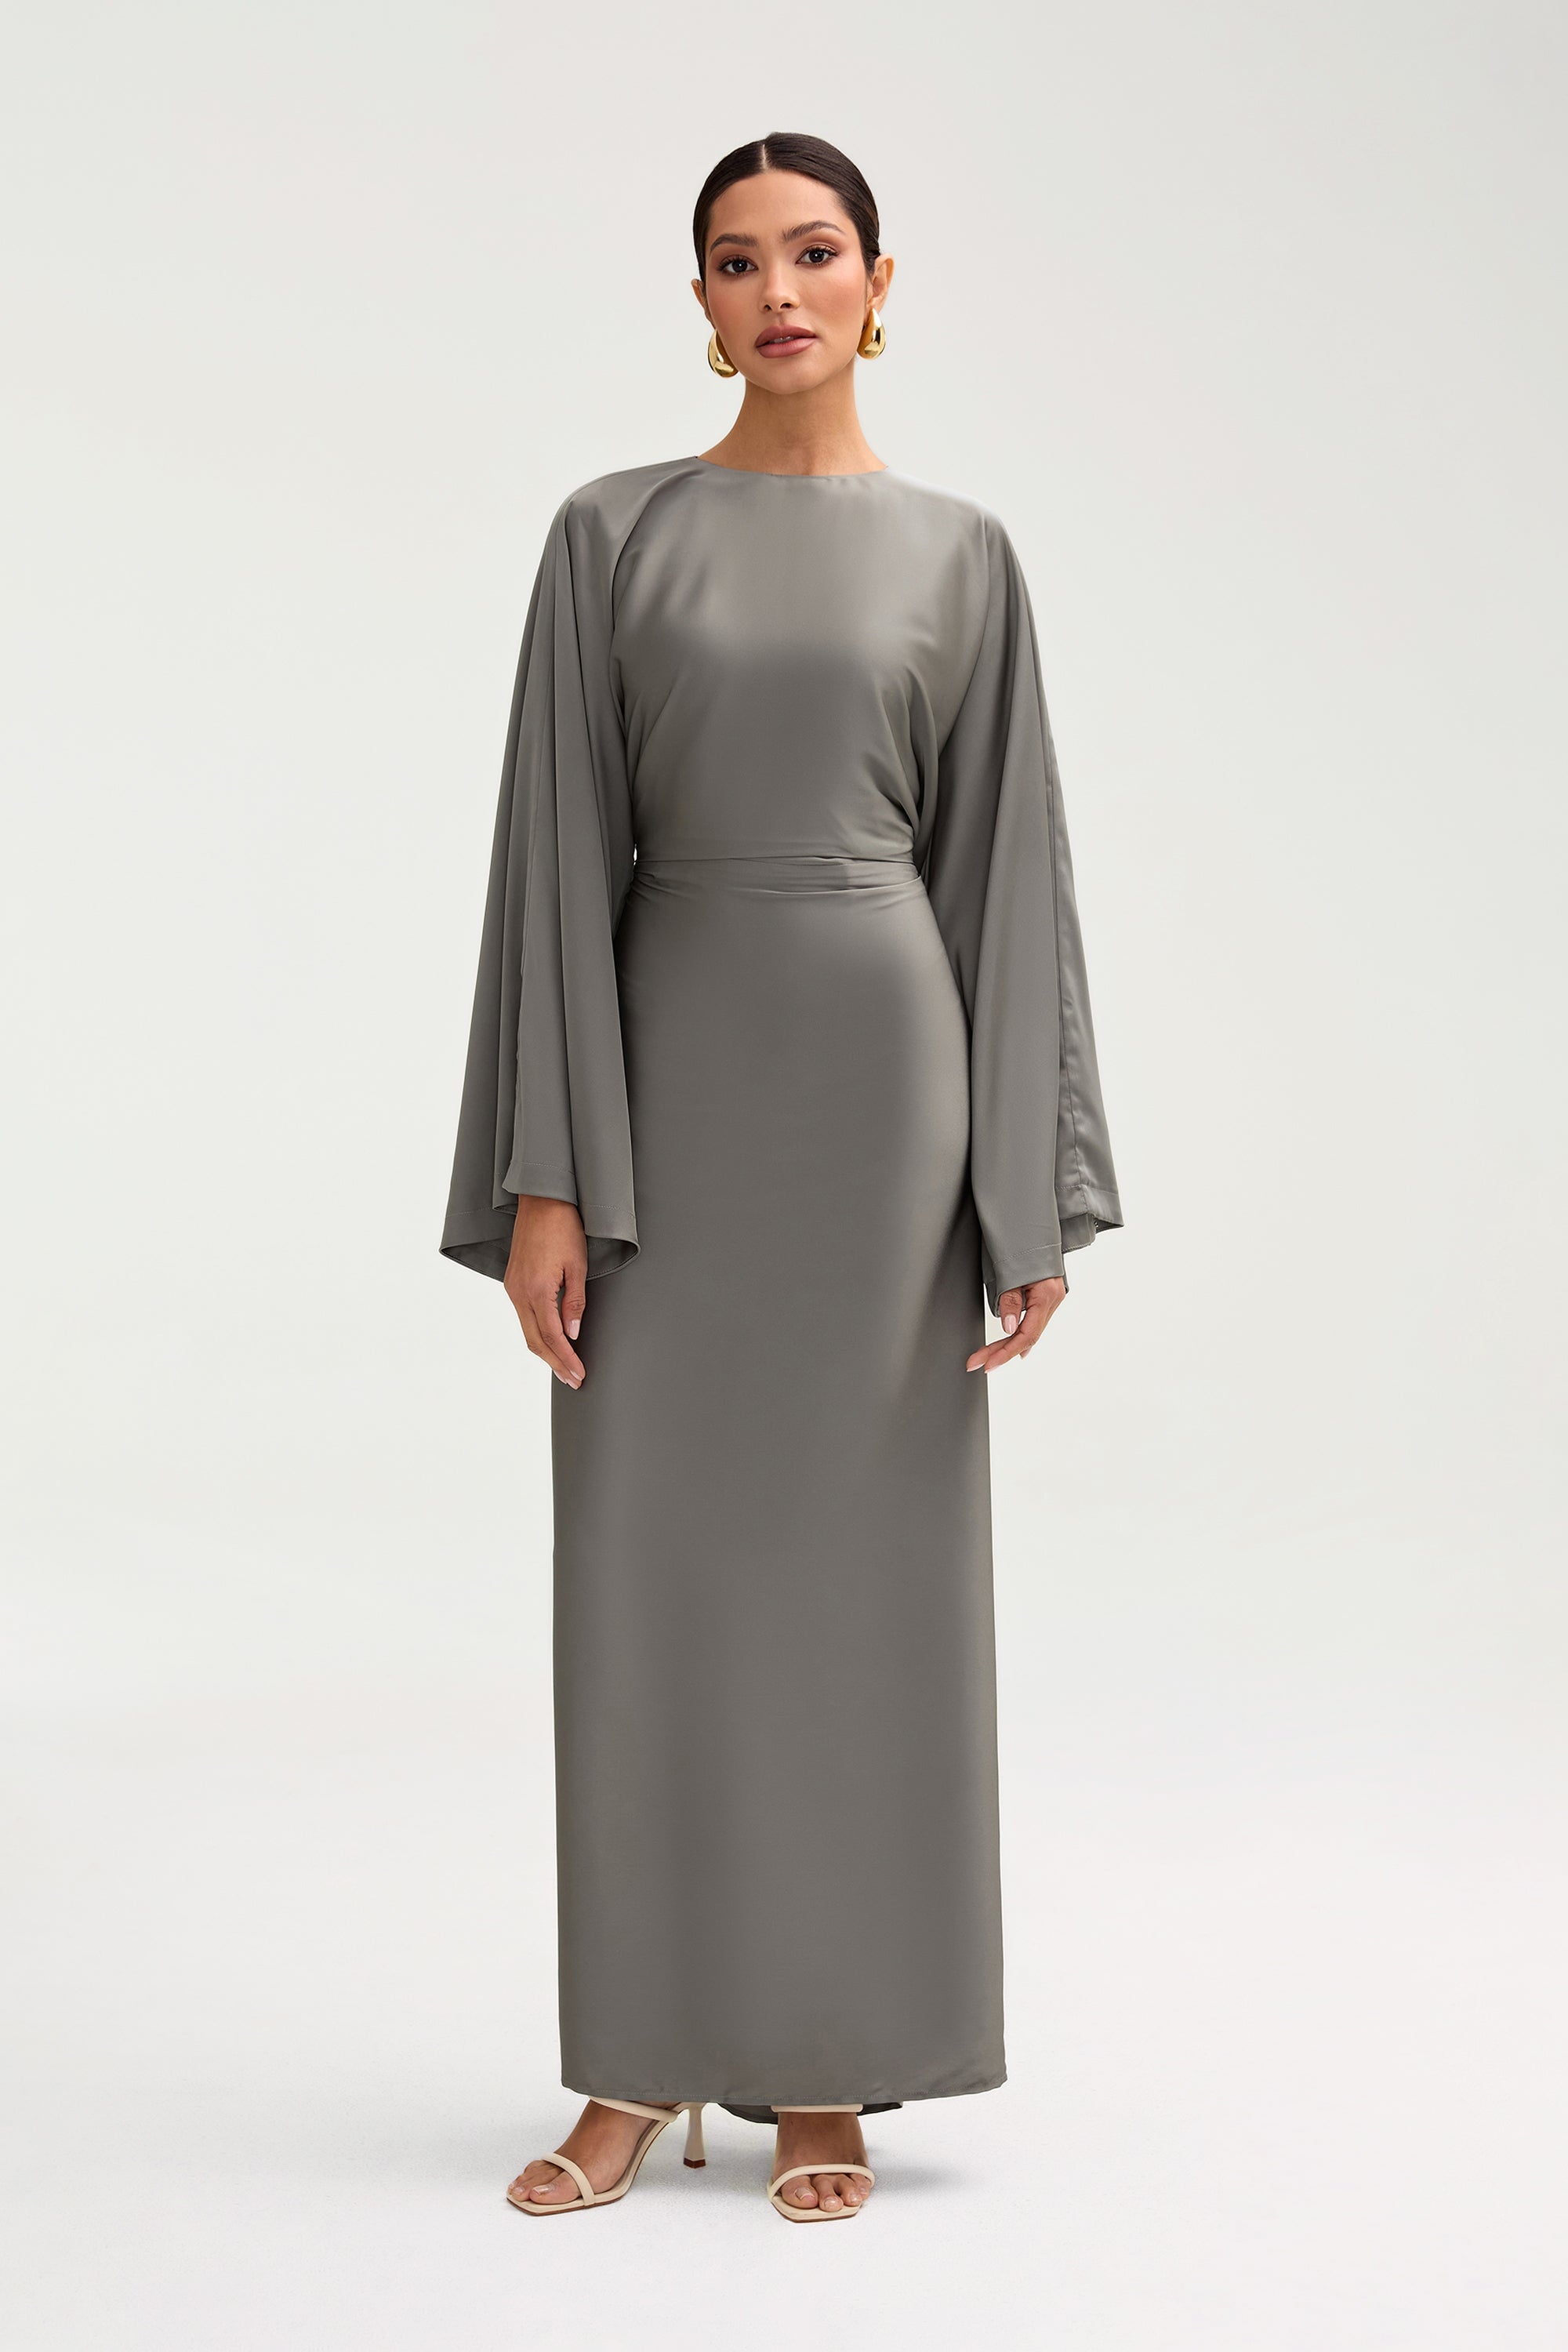 Batool Satin Maxi Dress - Sage Clothing Veiled 